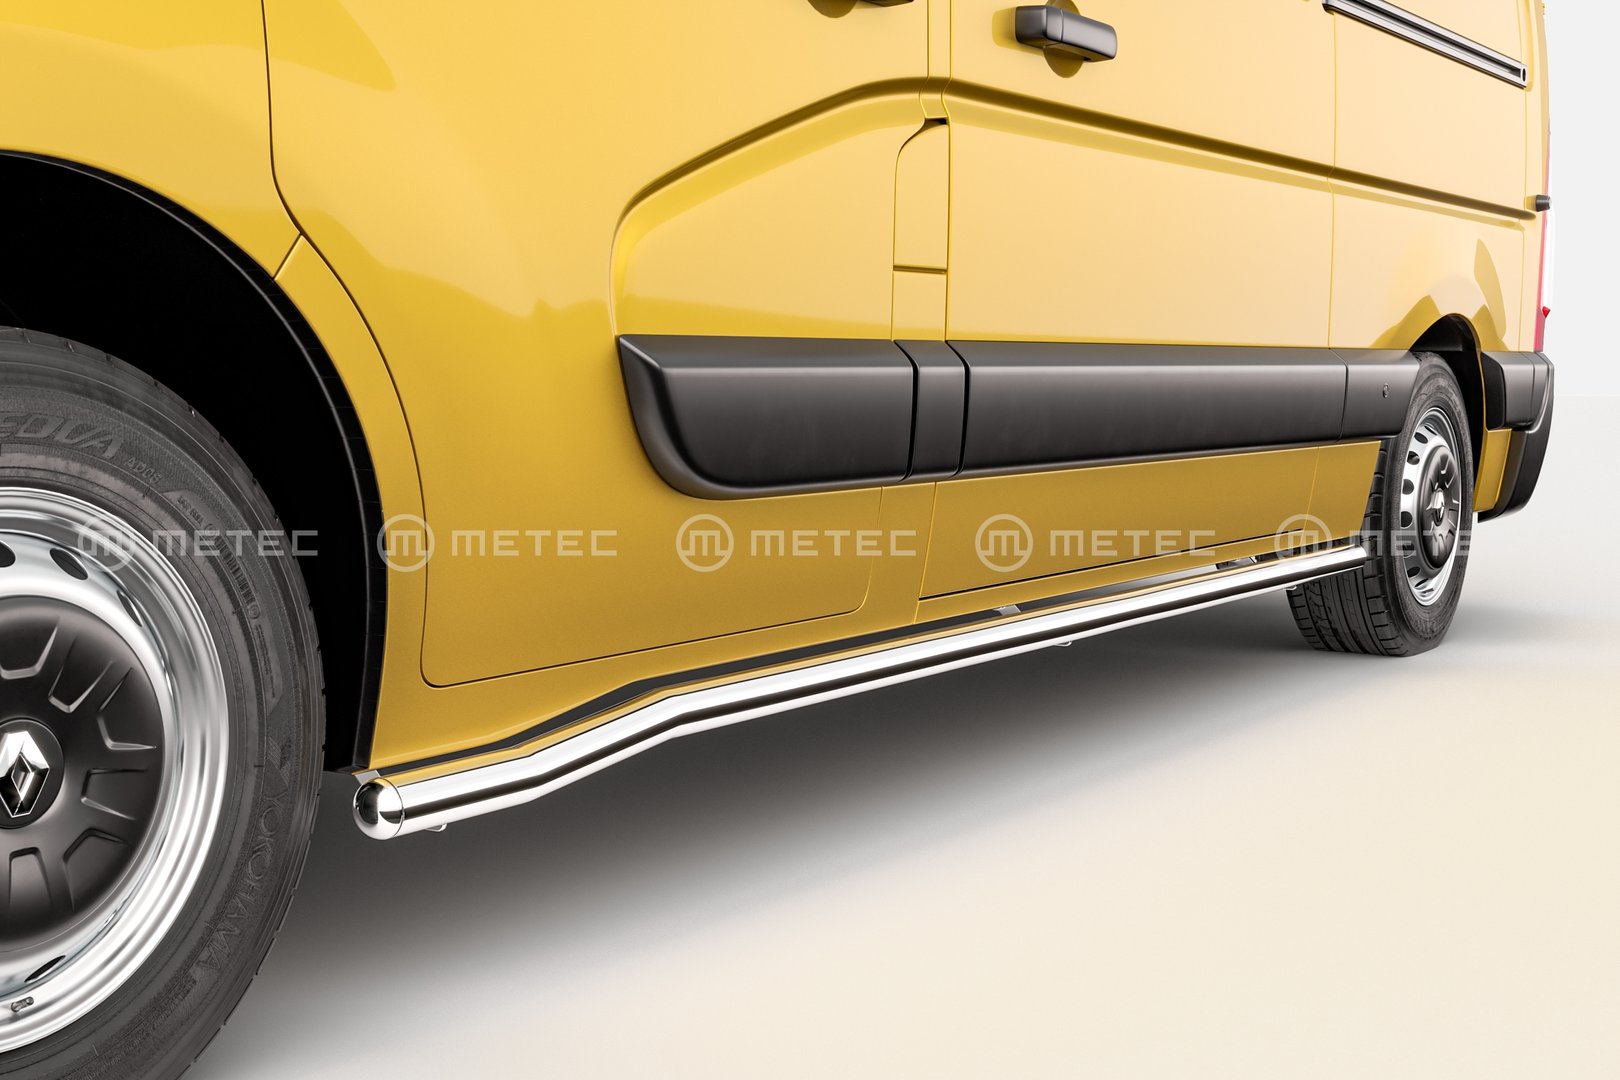 Renault Master Side bars (Metec)